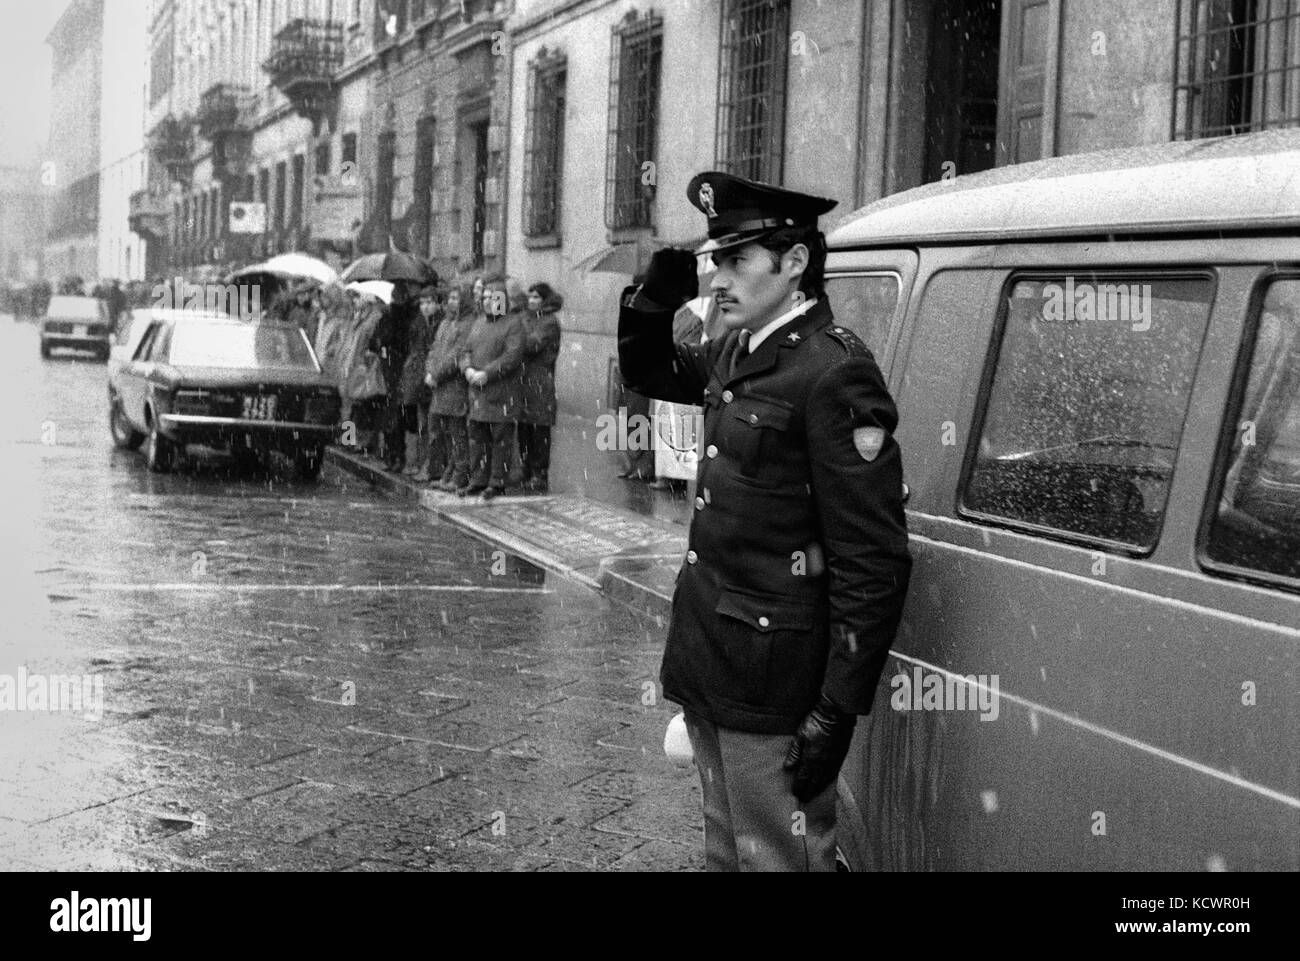 Milano (Italia), i funerali di funzionari di polizia vittorio padovani e Sergio bazzega, ucciso in un incendio in conflitto con Walter alasia, militante del gruppo terroristico Brigate rosse (dicembre 1976) Foto Stock